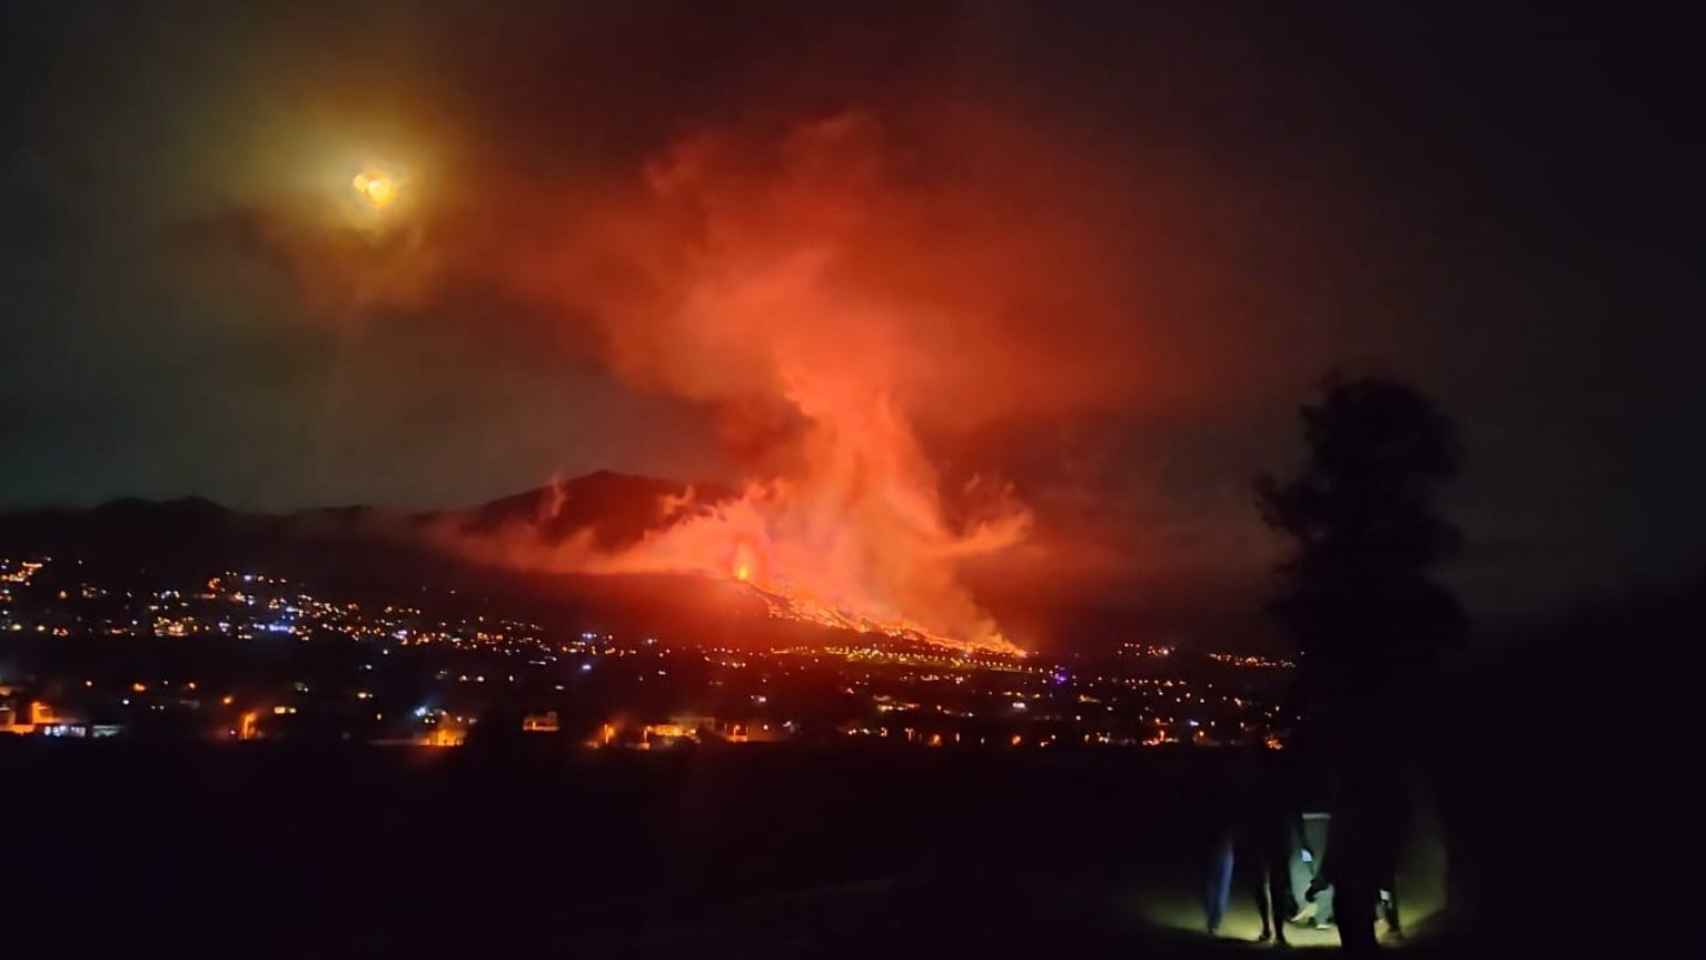 Volcán de La Palma en erupción